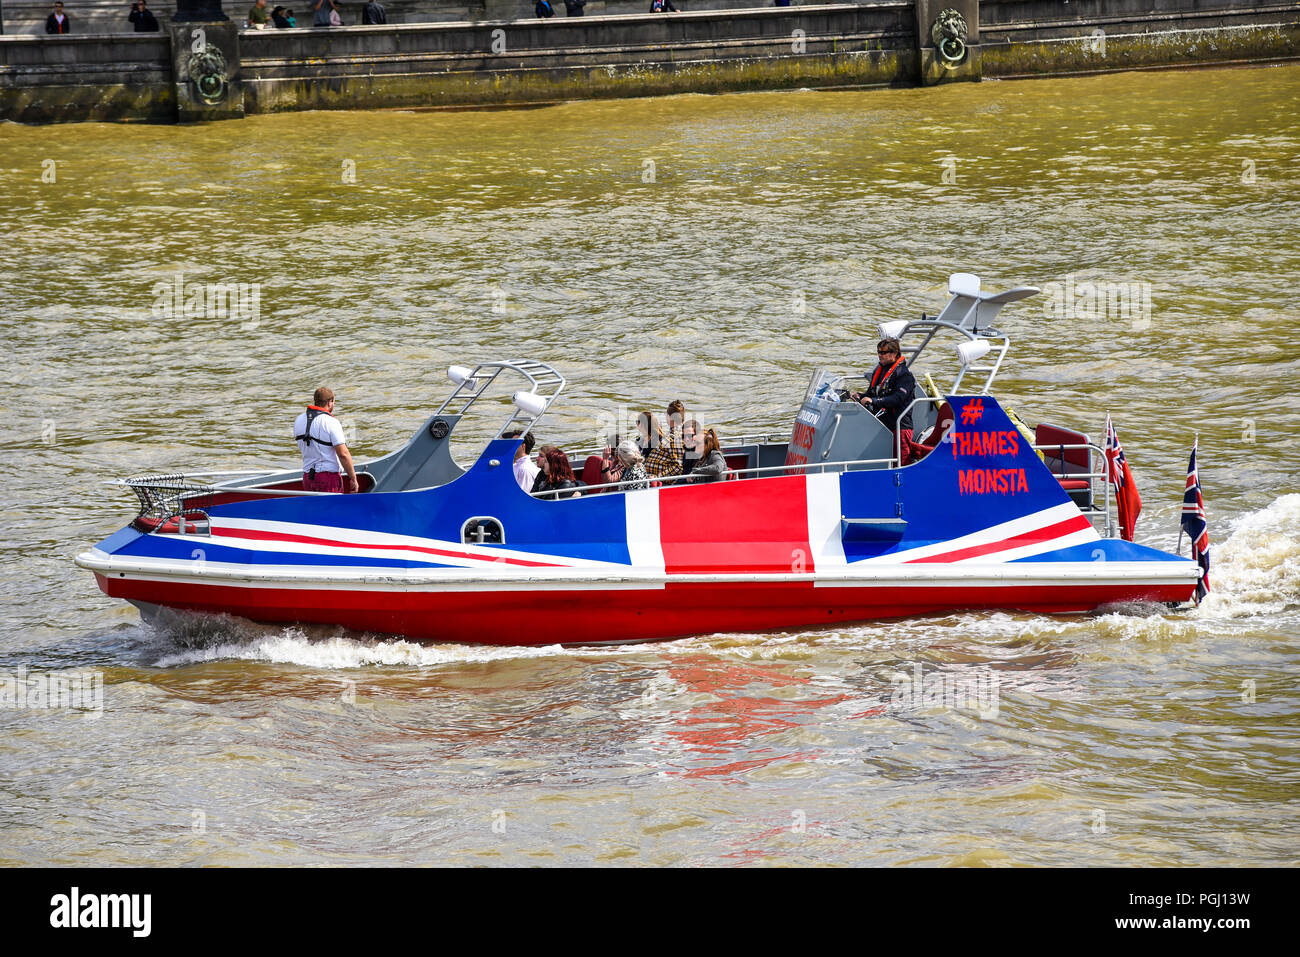 Themse Monsta Schnellboot British London Touristenfahrt. Fahrt mit dem Jetboot auf der Themse. Passagiere. Flussverkehr Stockfoto